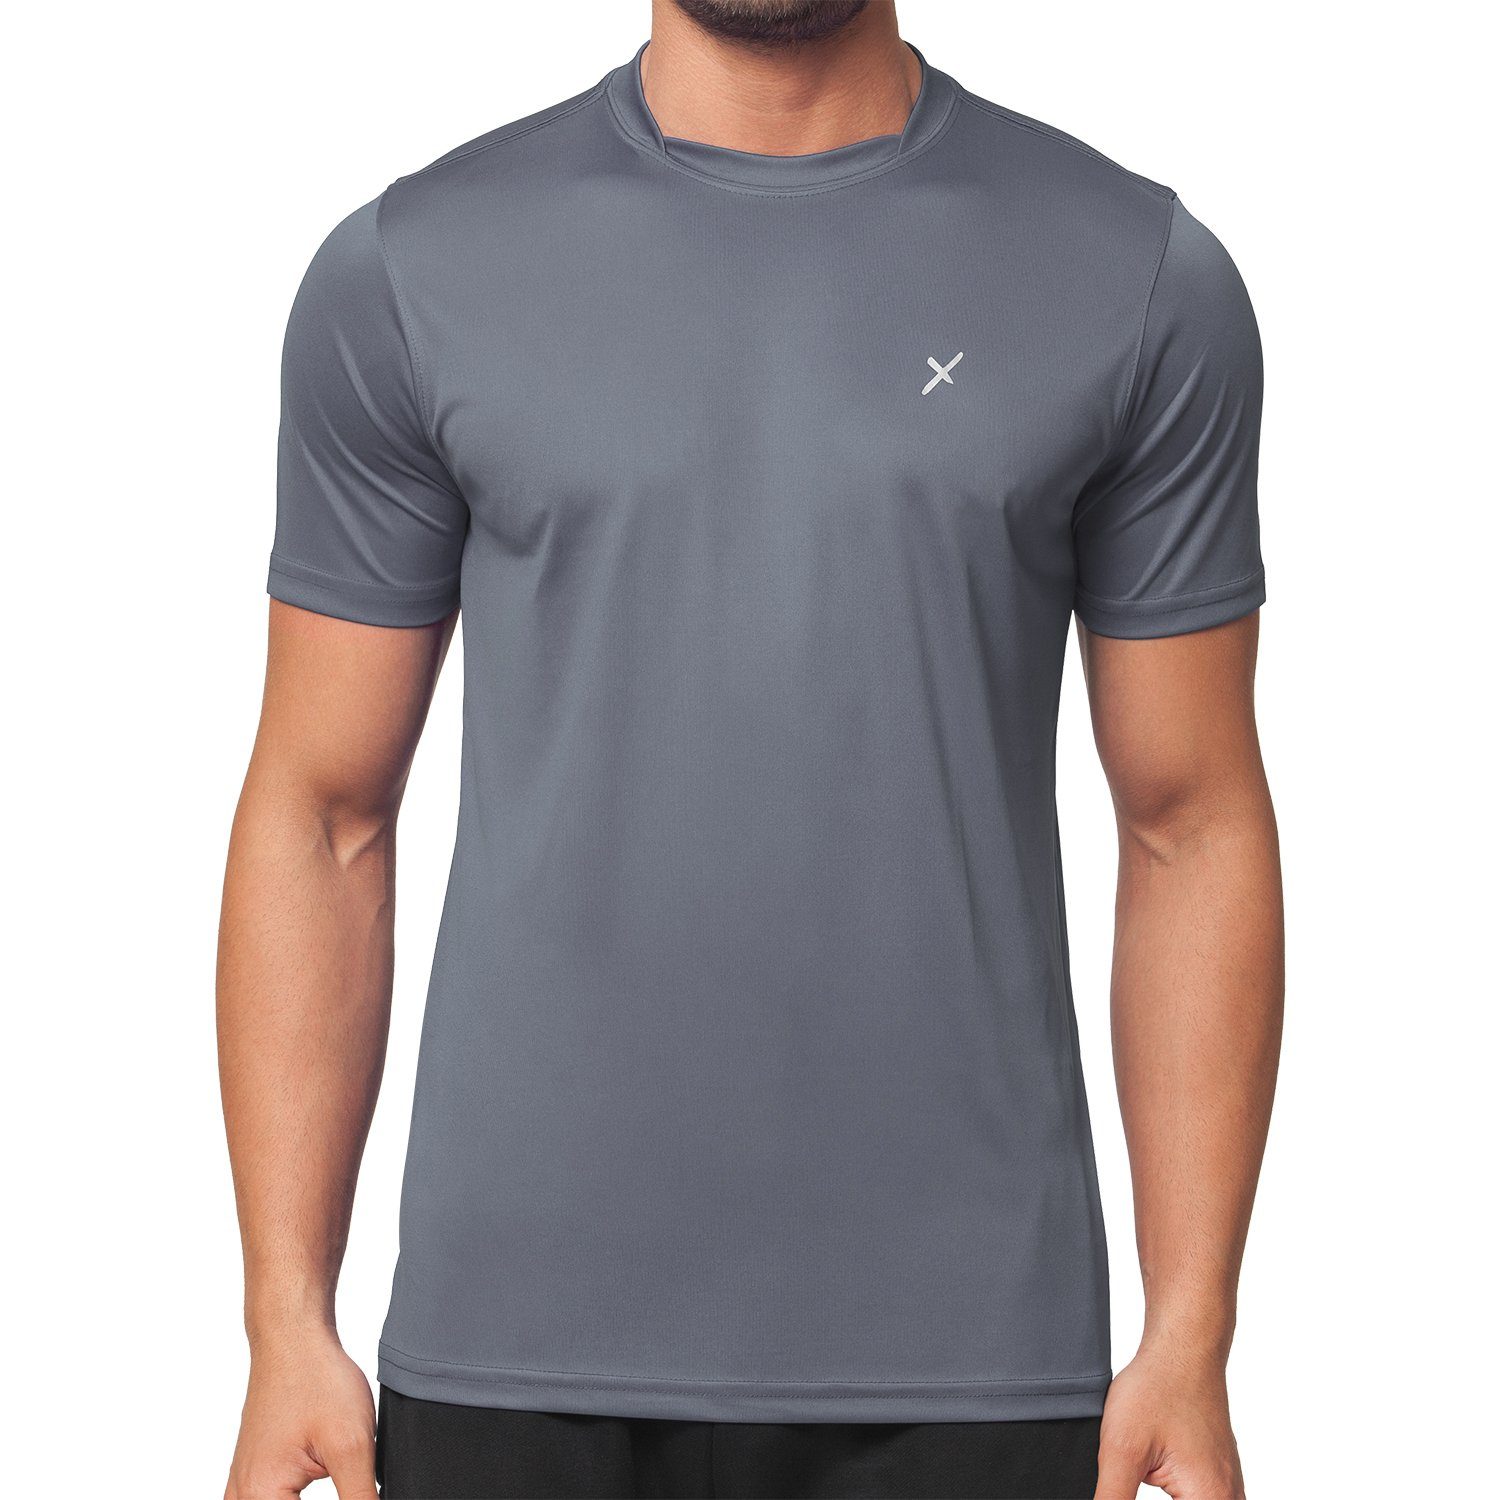 CFLEX Trainingsshirt Herren Sport Shirt Fitness T-Shirt Sportswear Collection Grau